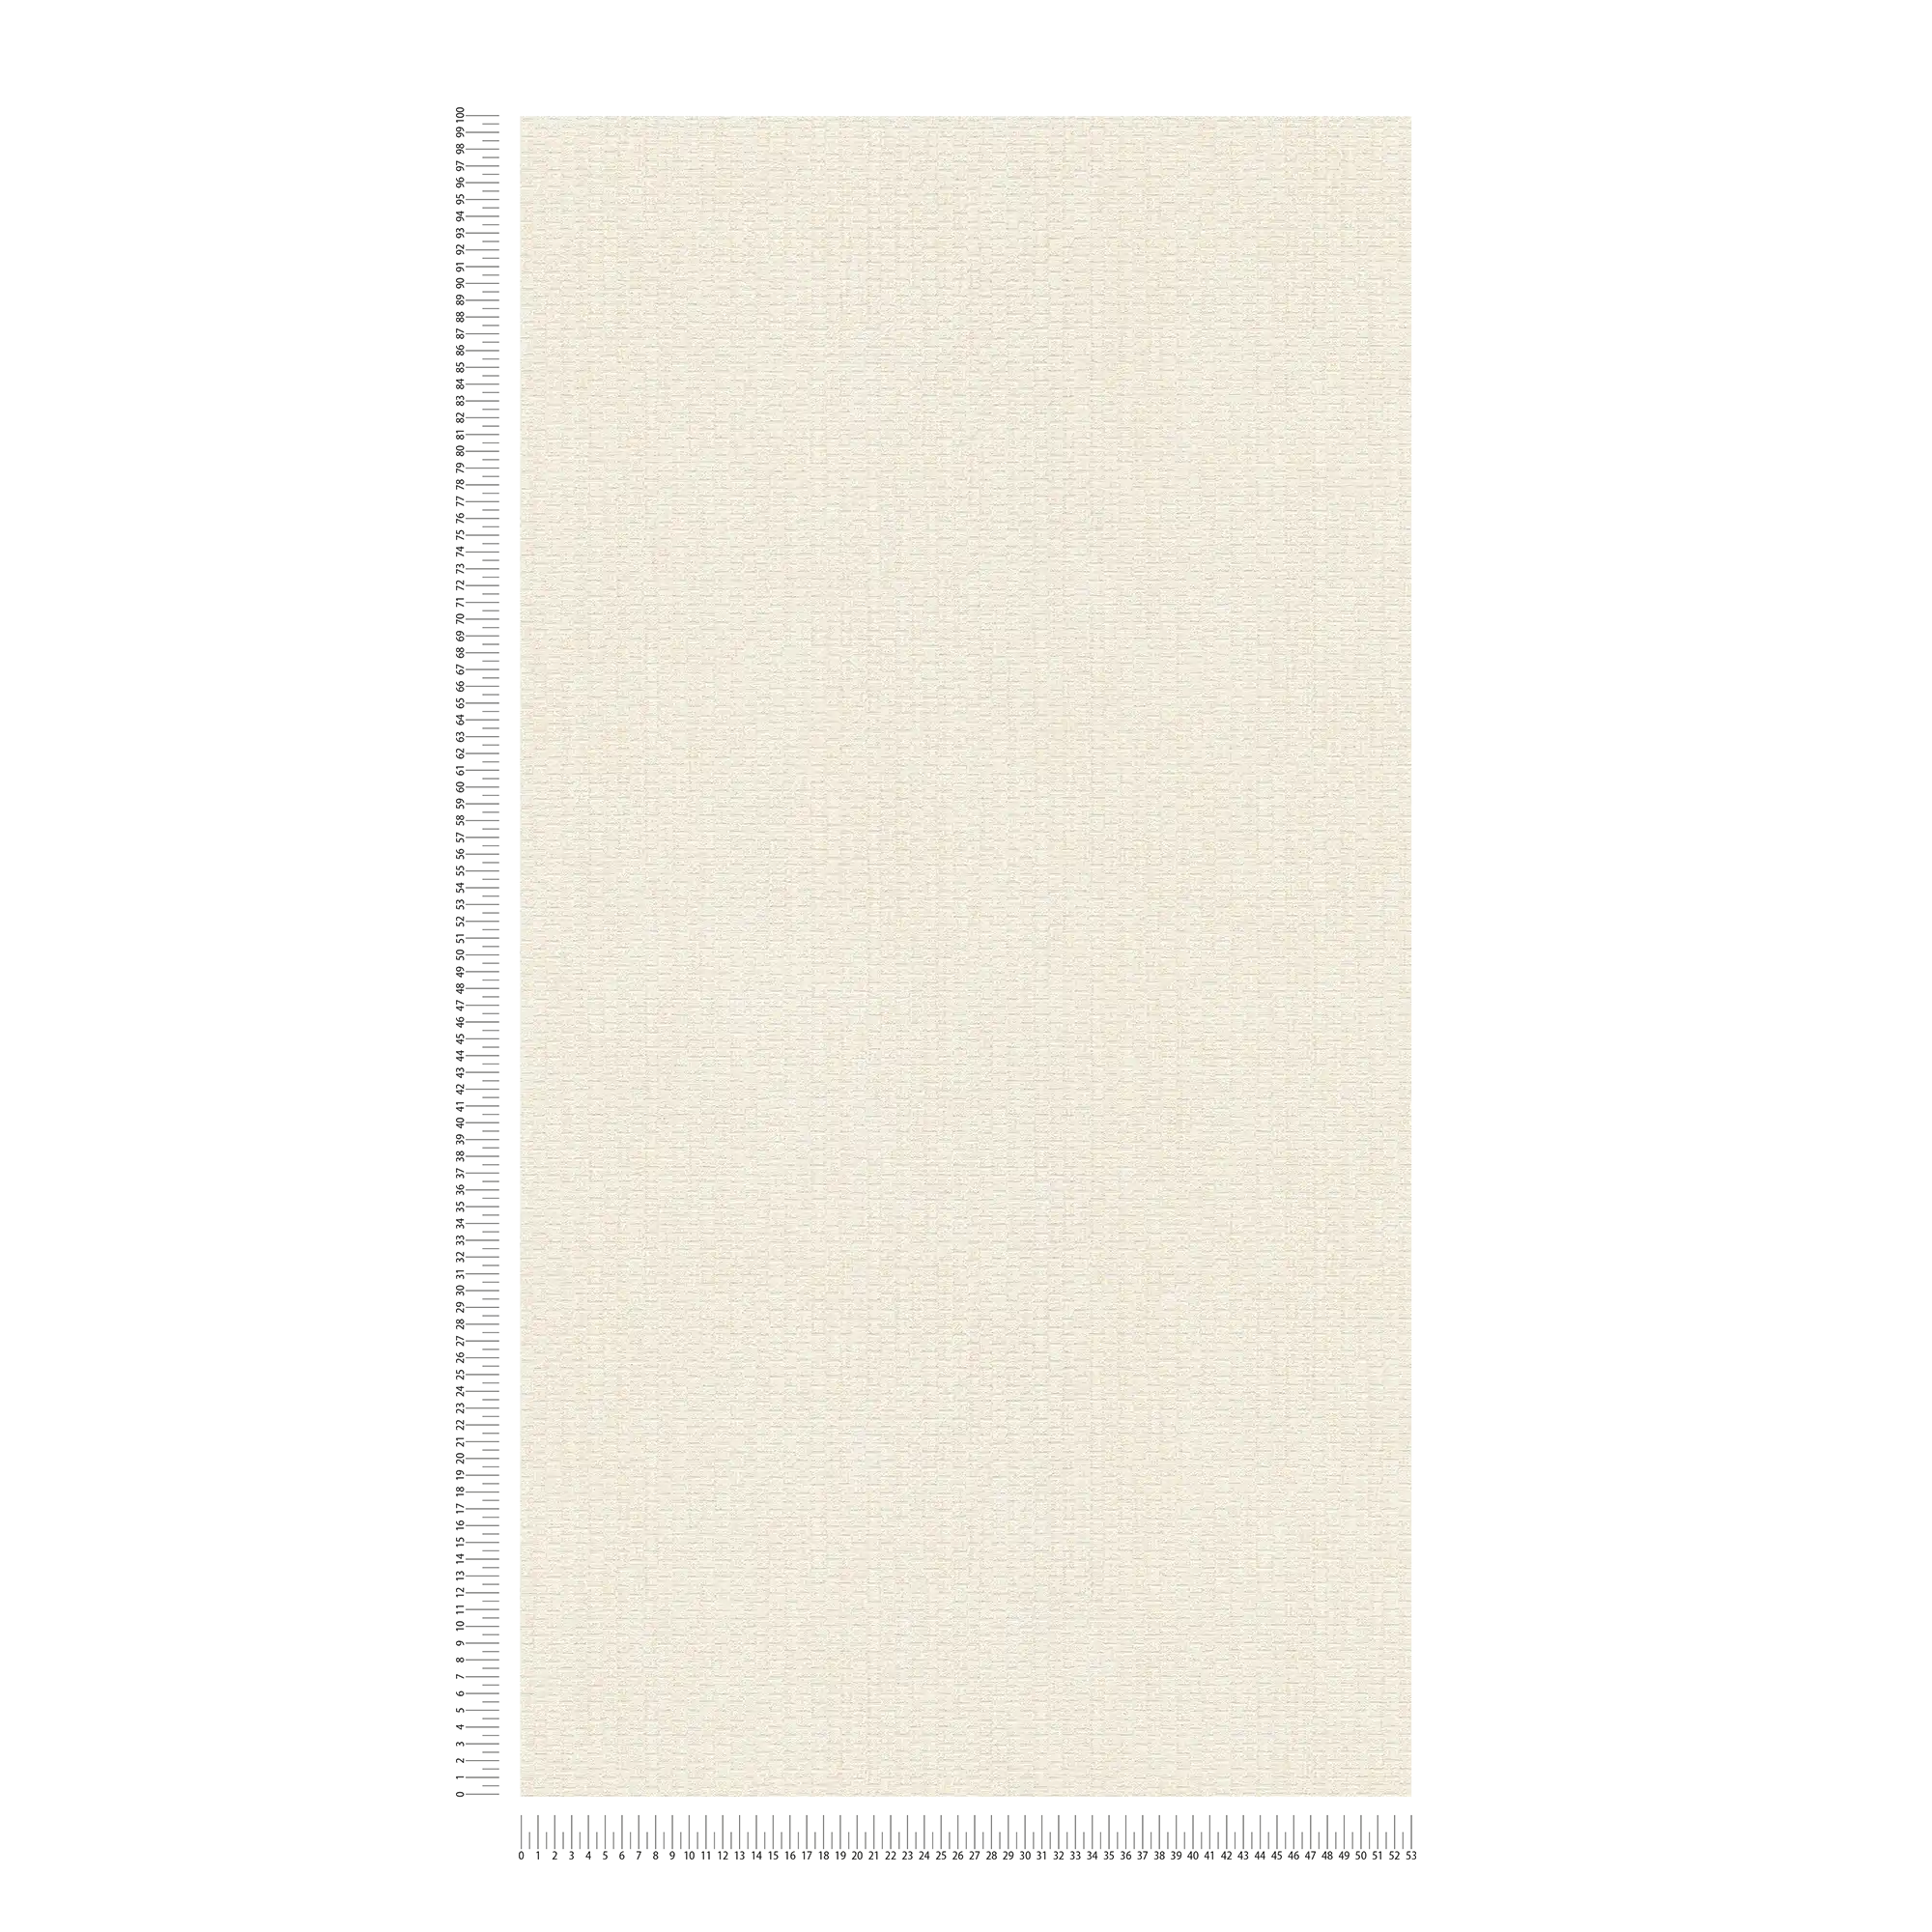             Tapete mit Bastmatten Design – Creme, Weiß
        